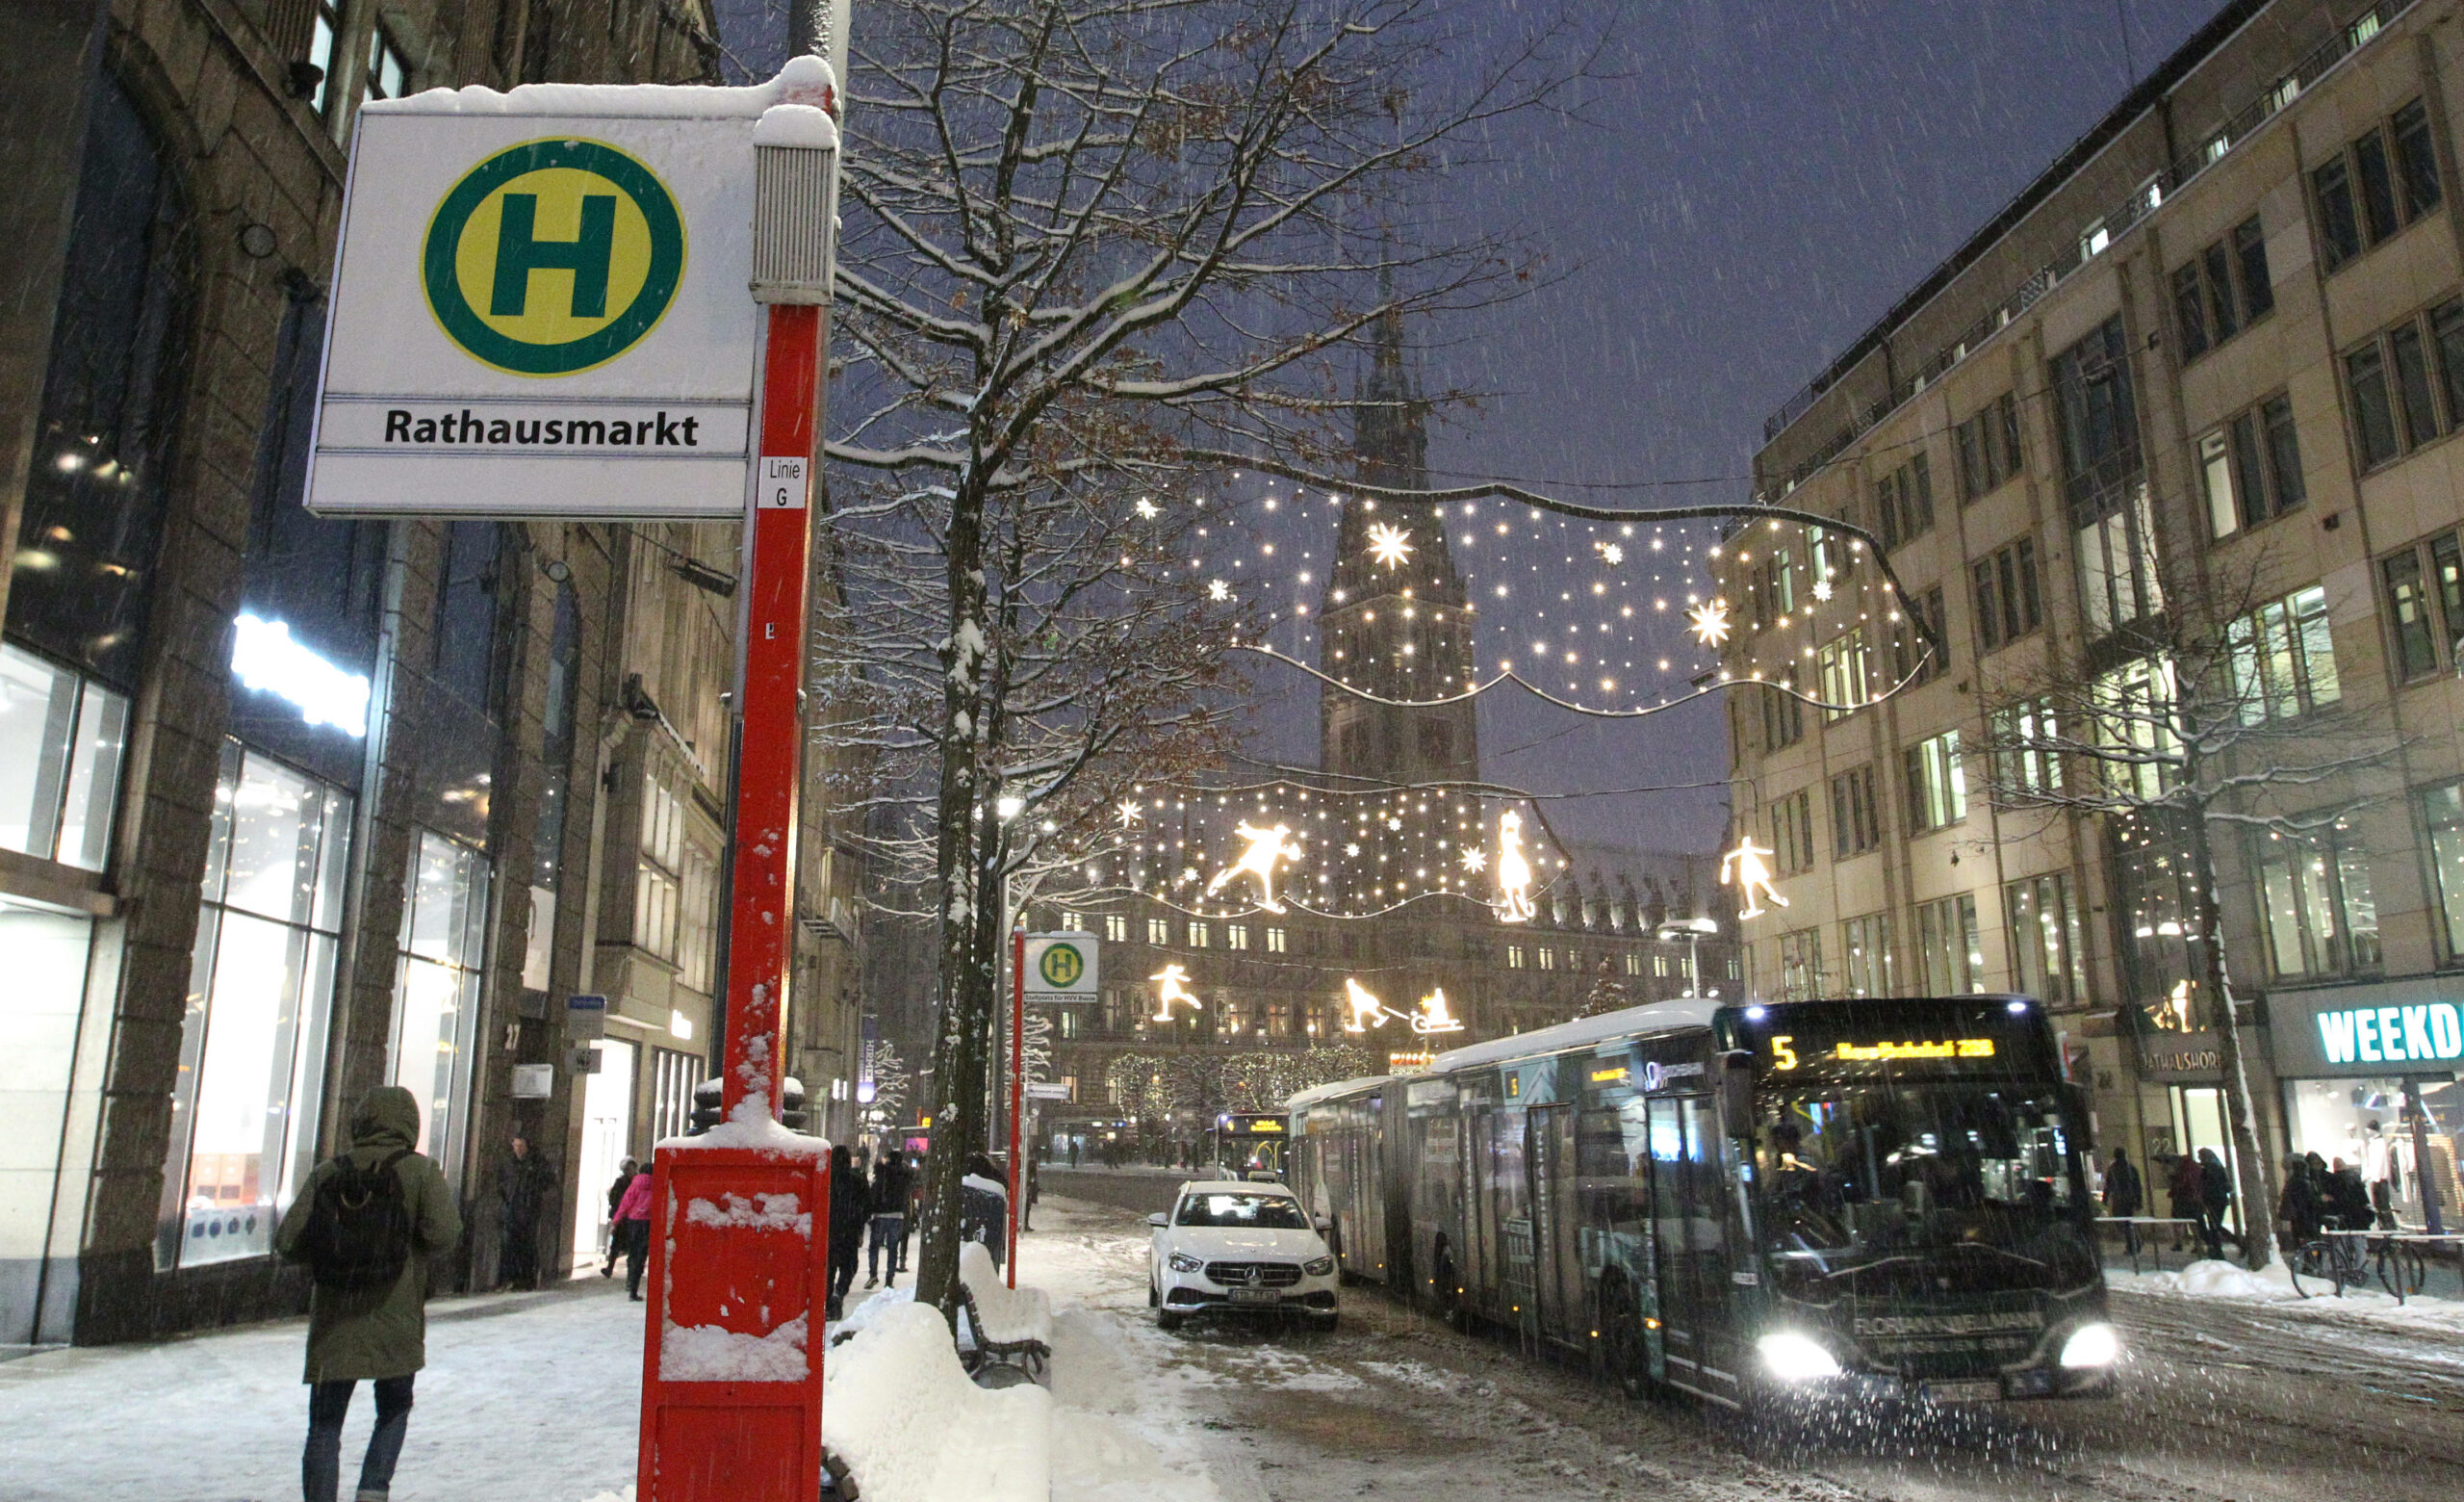 Seit MIttwochmorgen streiken die Bahnen – dafür sind Hamburgs Busse überfüllt. (Symbolbild)